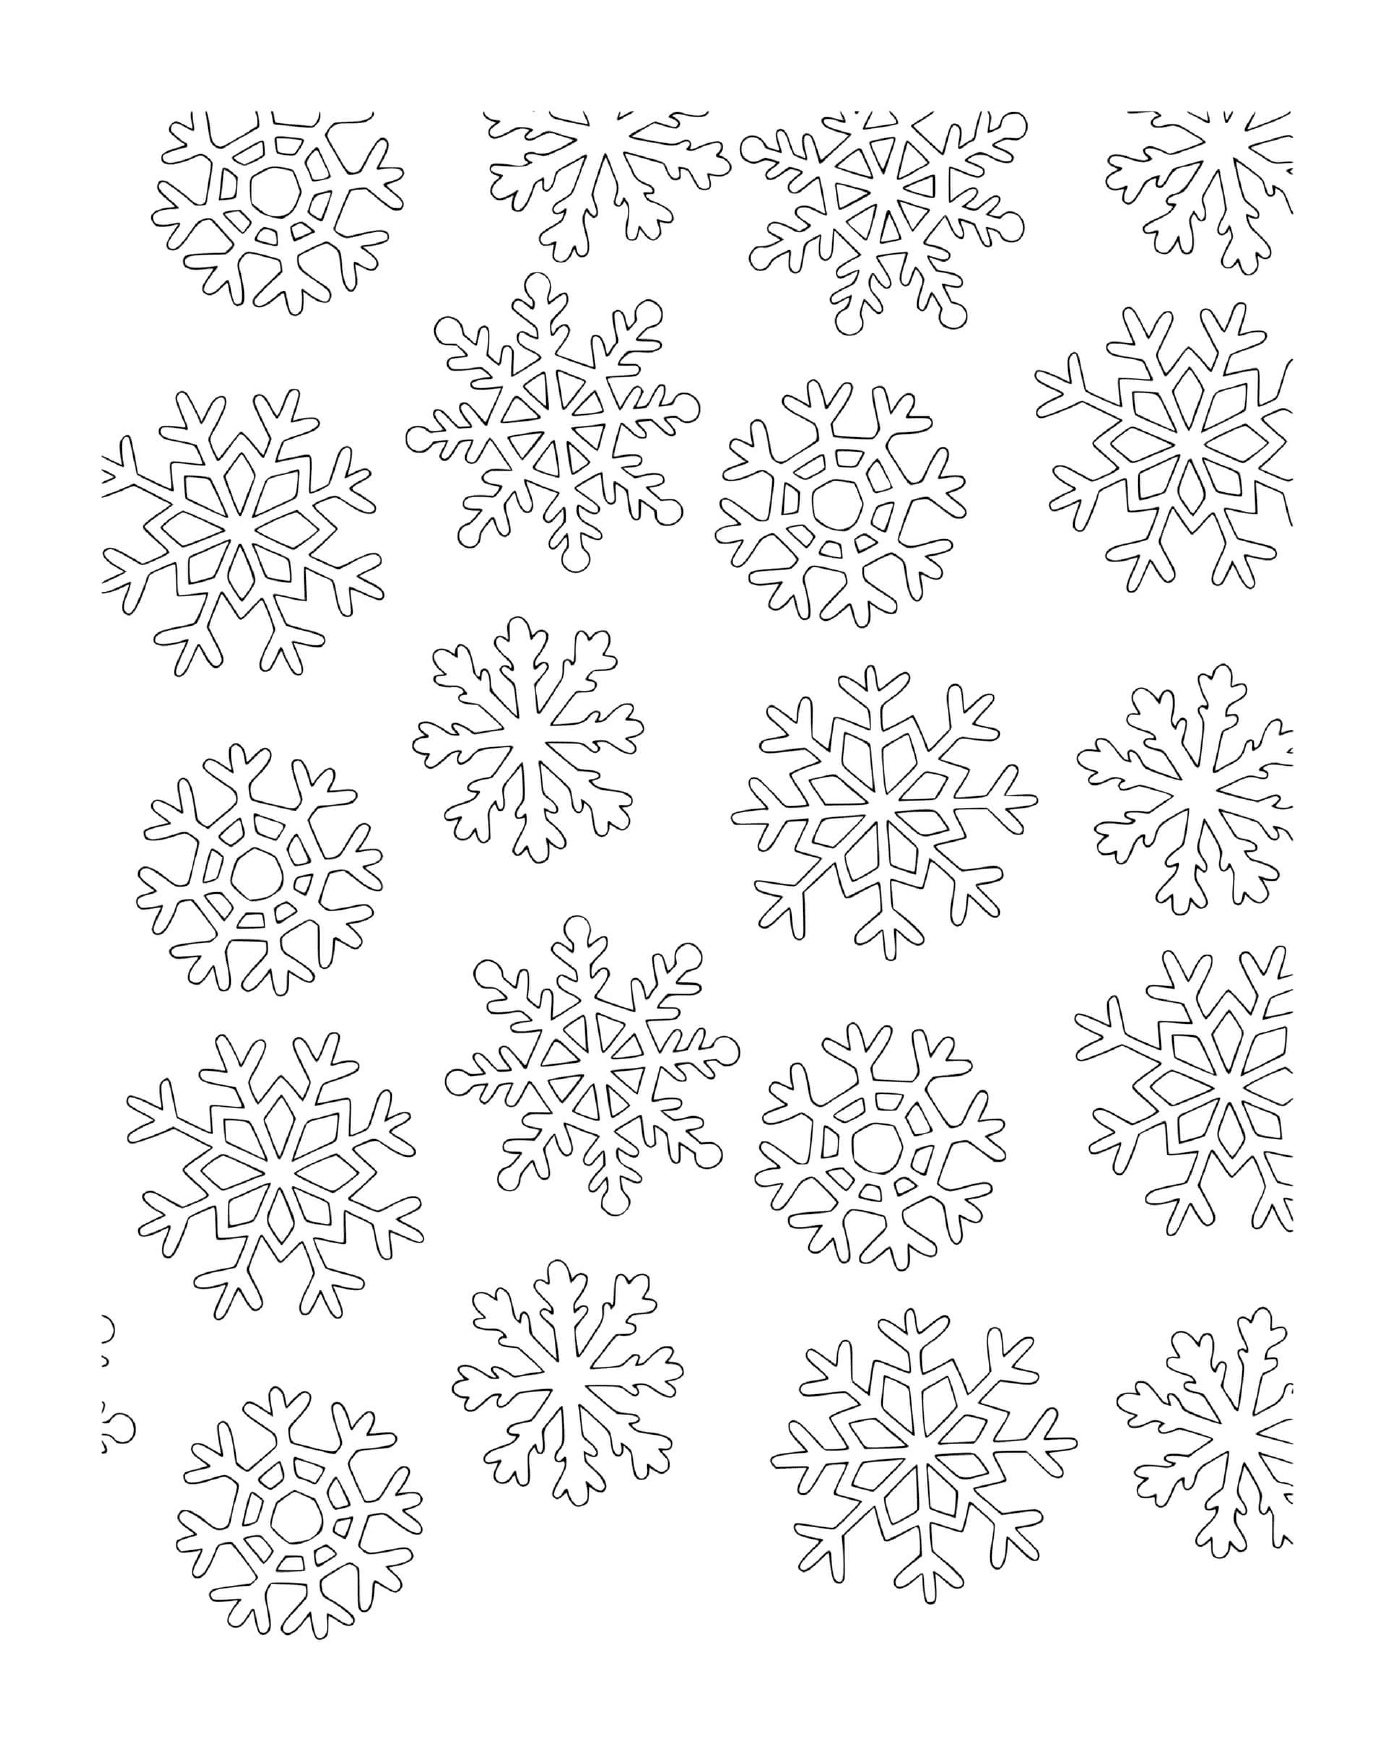  A snowflake pattern 